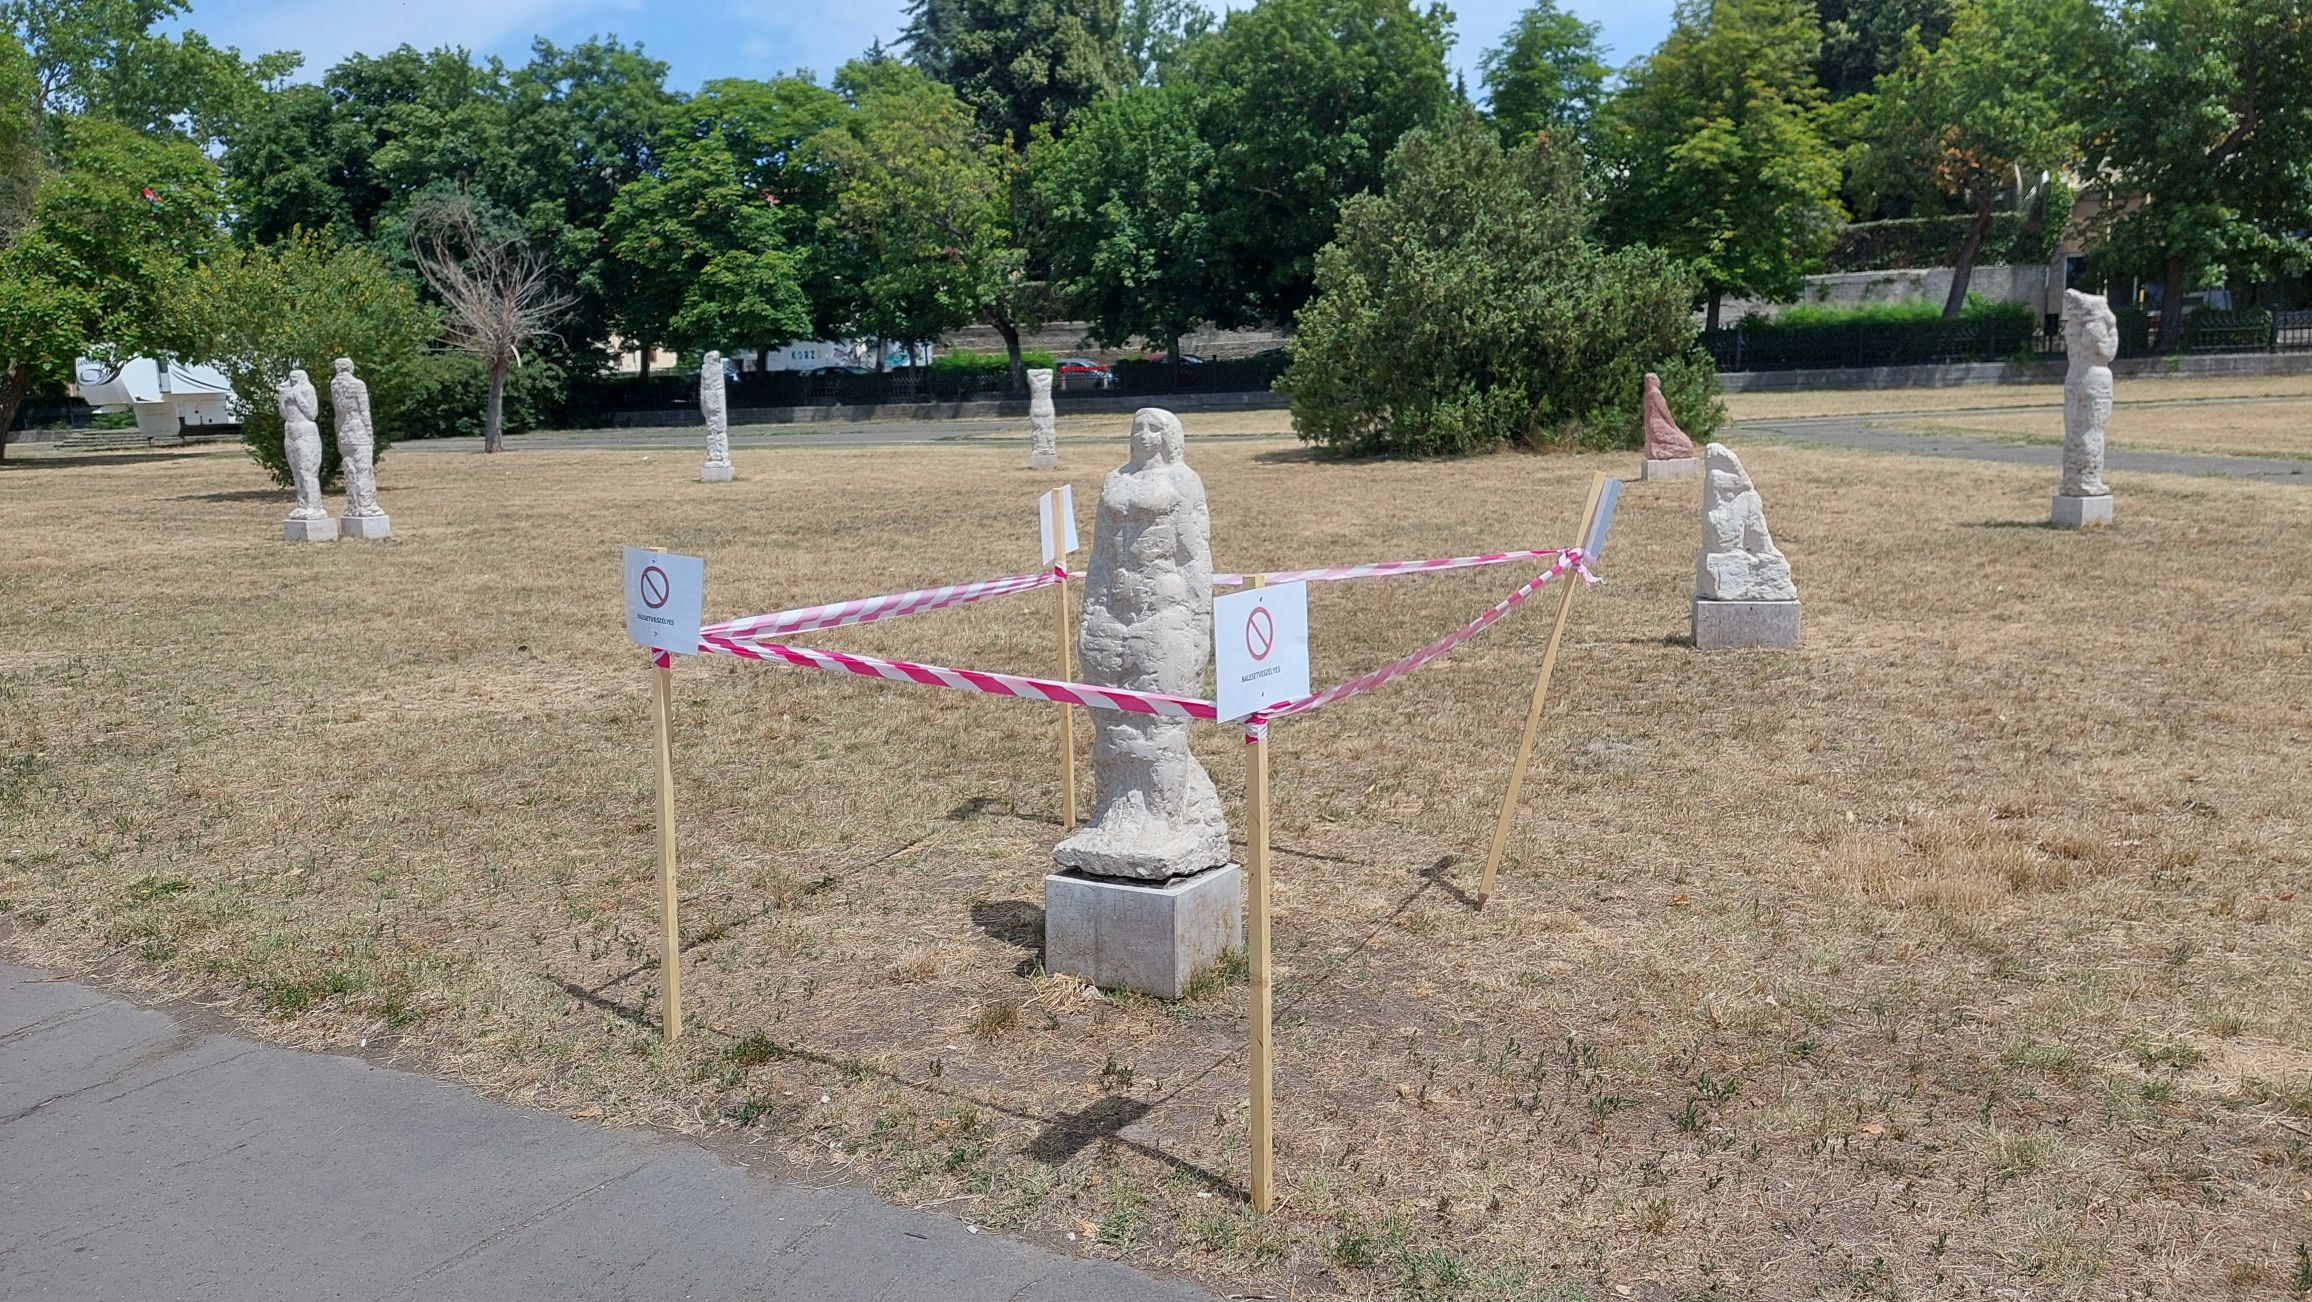 Egyoldalúan felbontották a Duna-parti szoborcsoport letéti szerződését